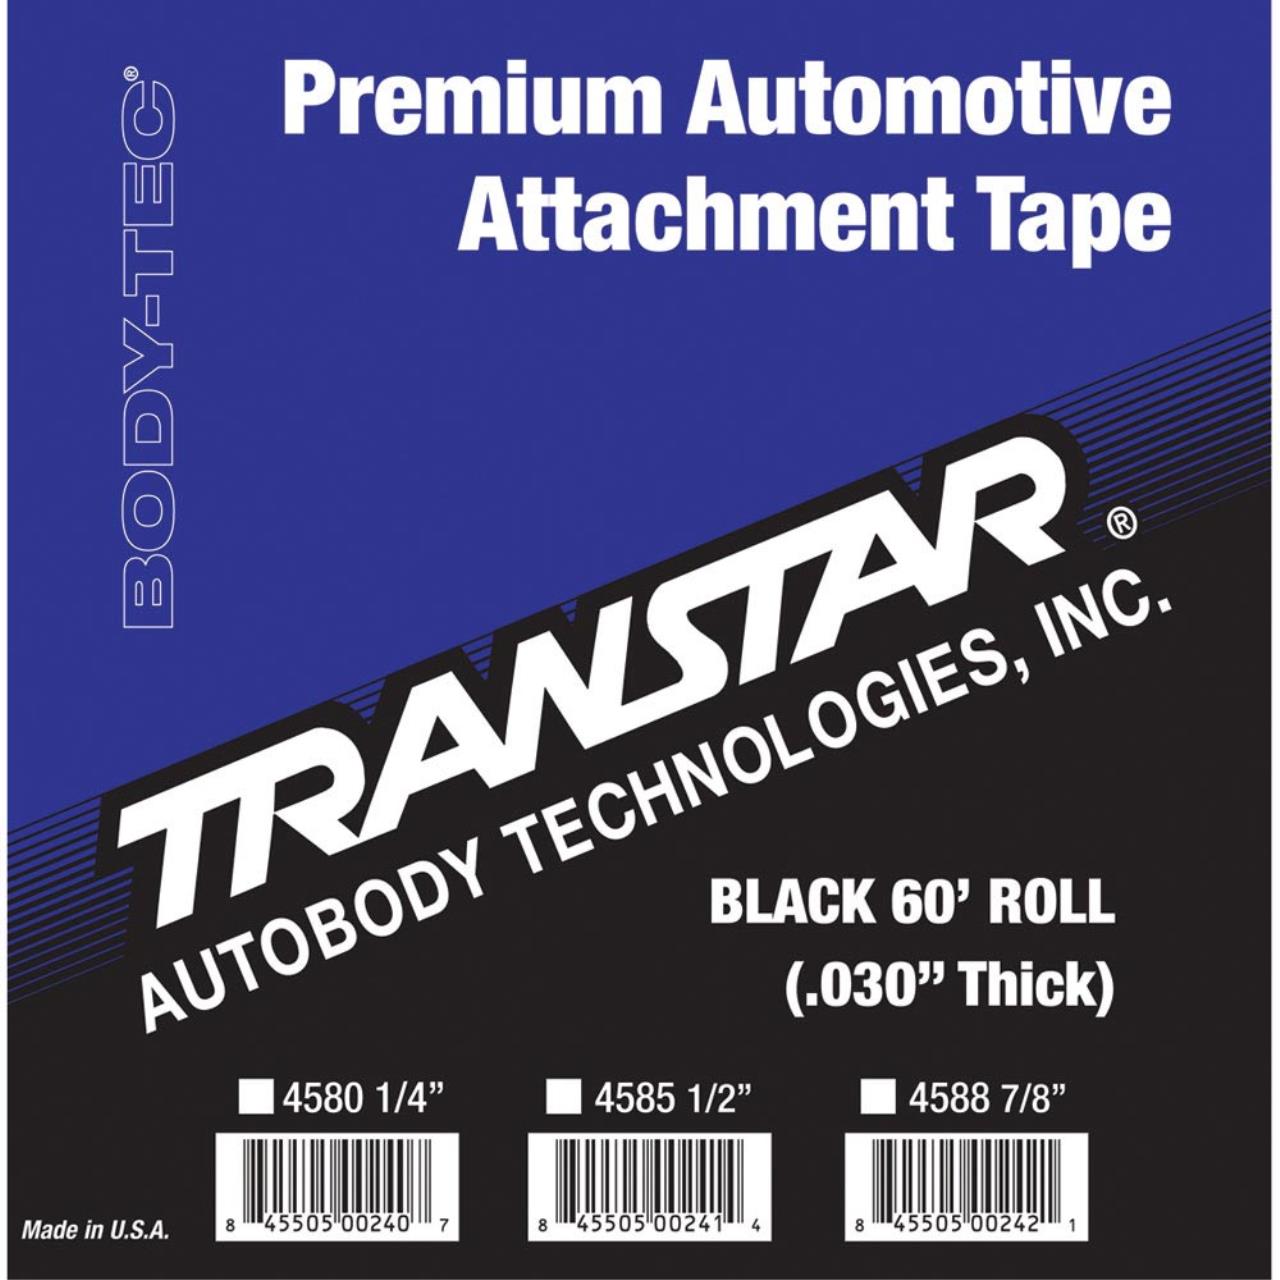 Transtar Automotive Attachment Tape